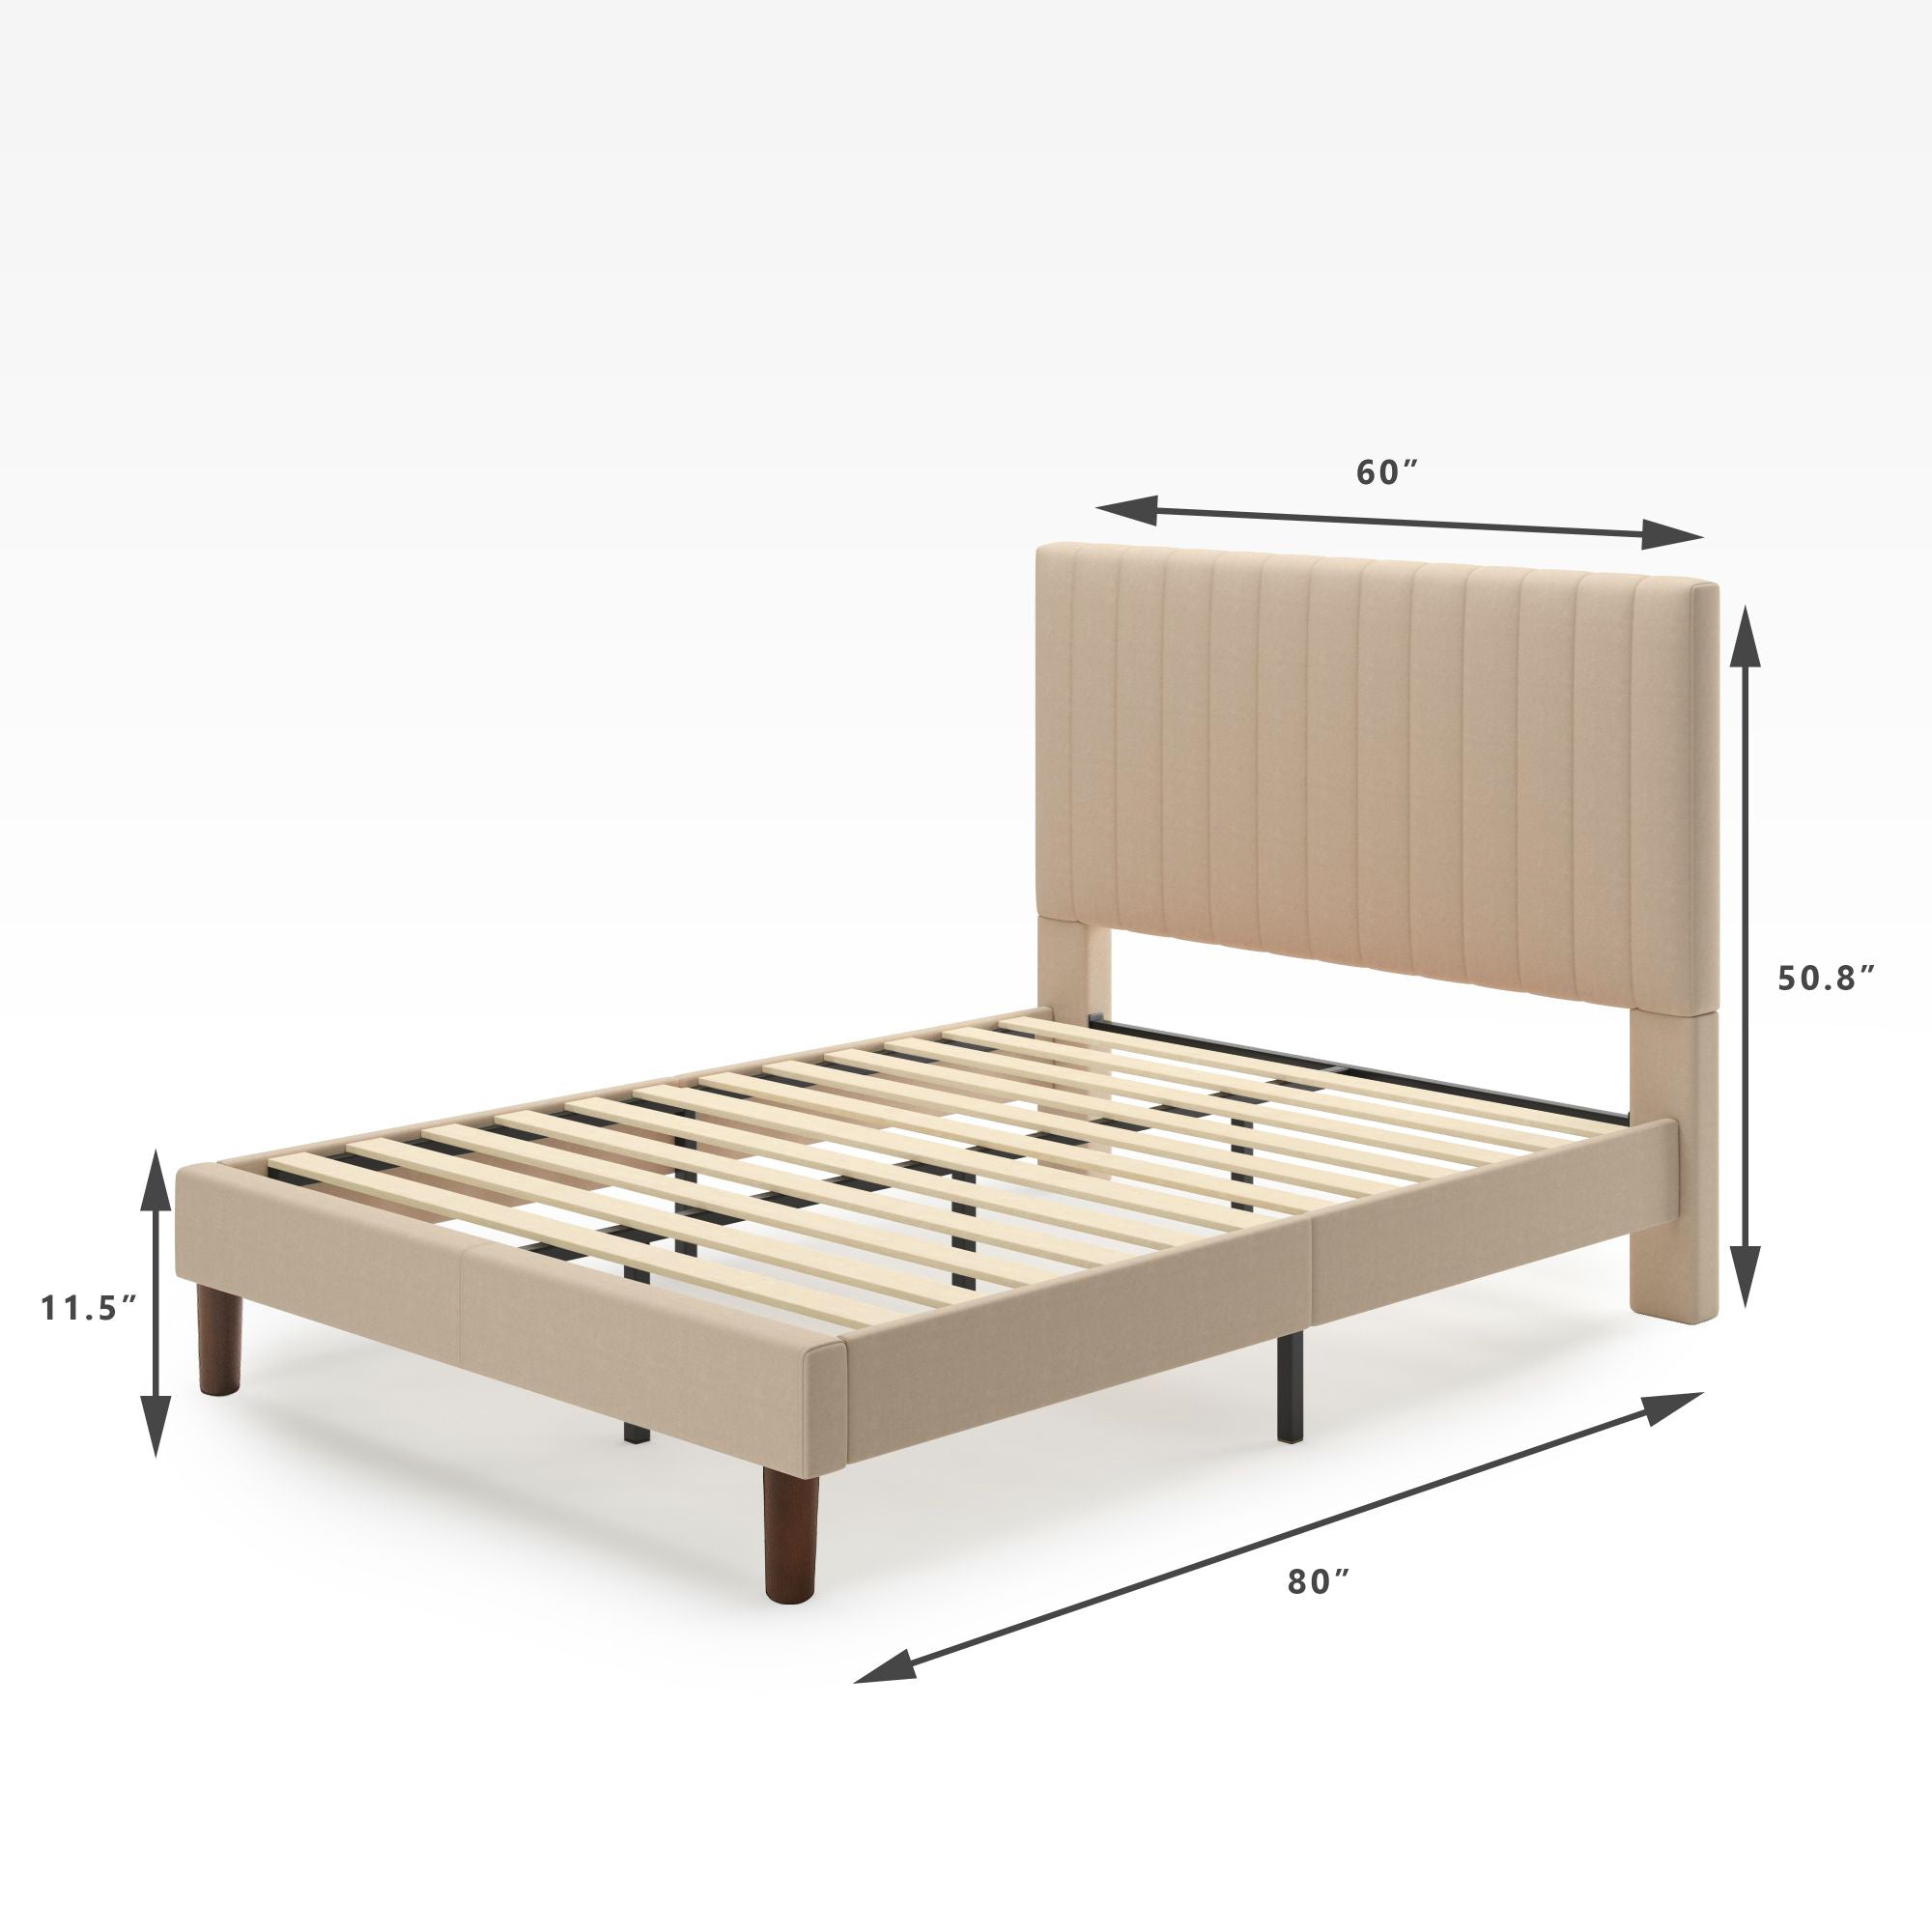 Debi Upholstered Platform Bed Frame